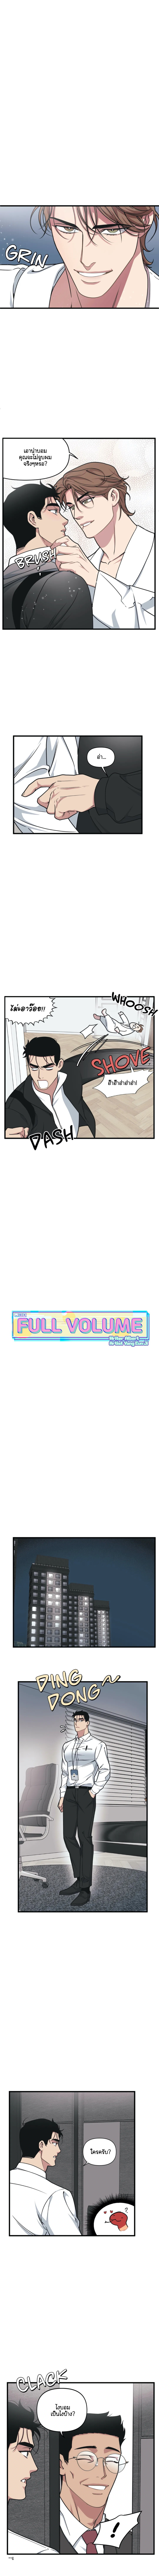 Full Volume 25 3